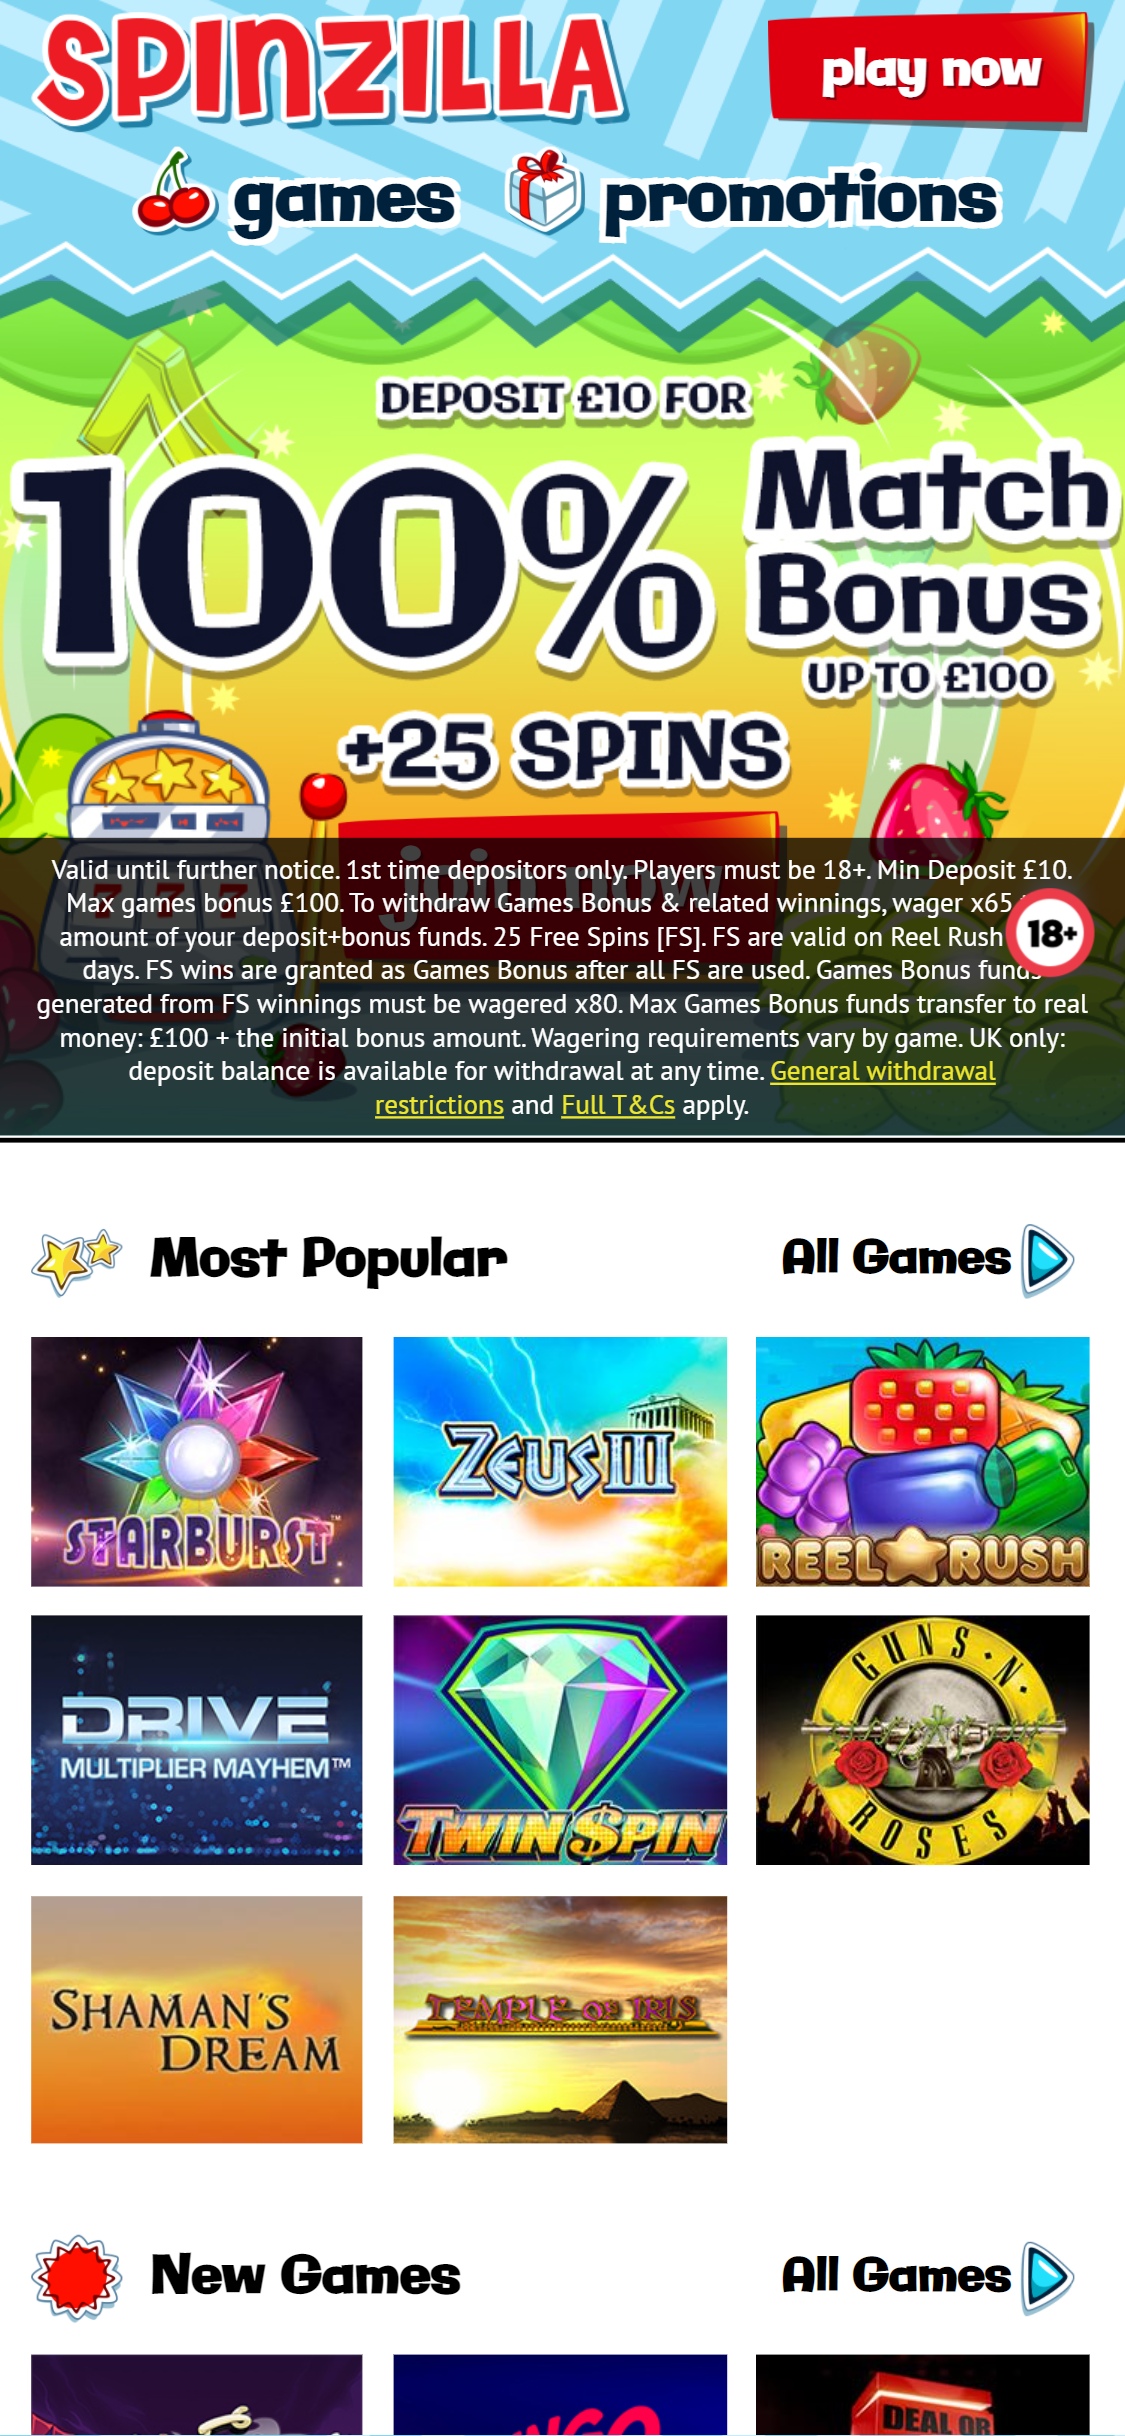 Spinzilla Casino Mobile Review